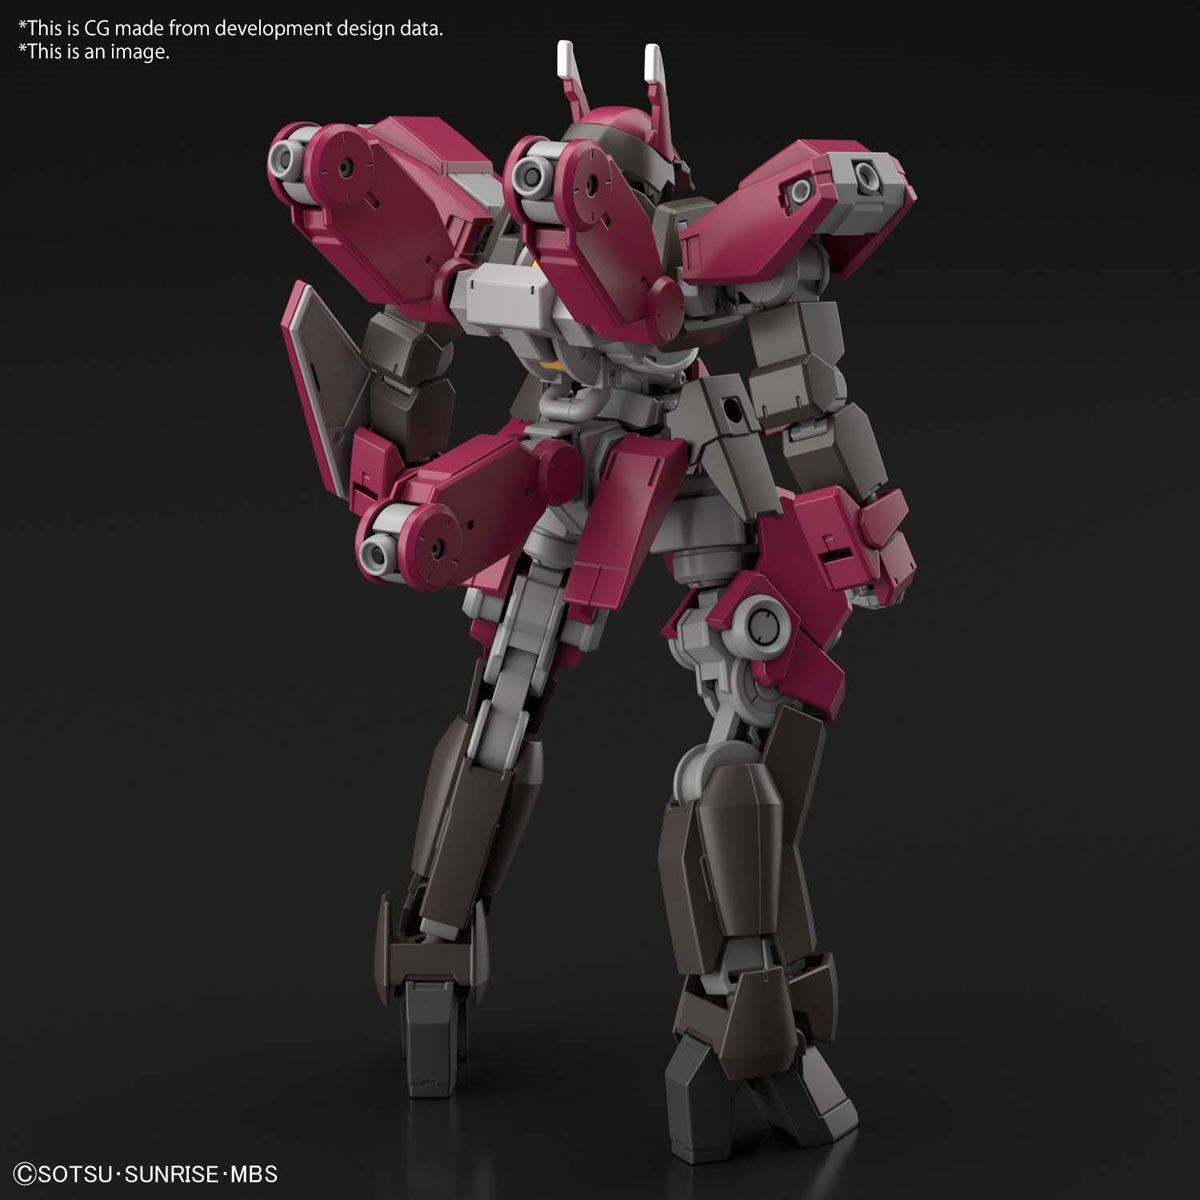 Bandai HG Iron Blooded Orphans 004 Gundam Graze Custom 1/144 Scale Model Kit for sale online 